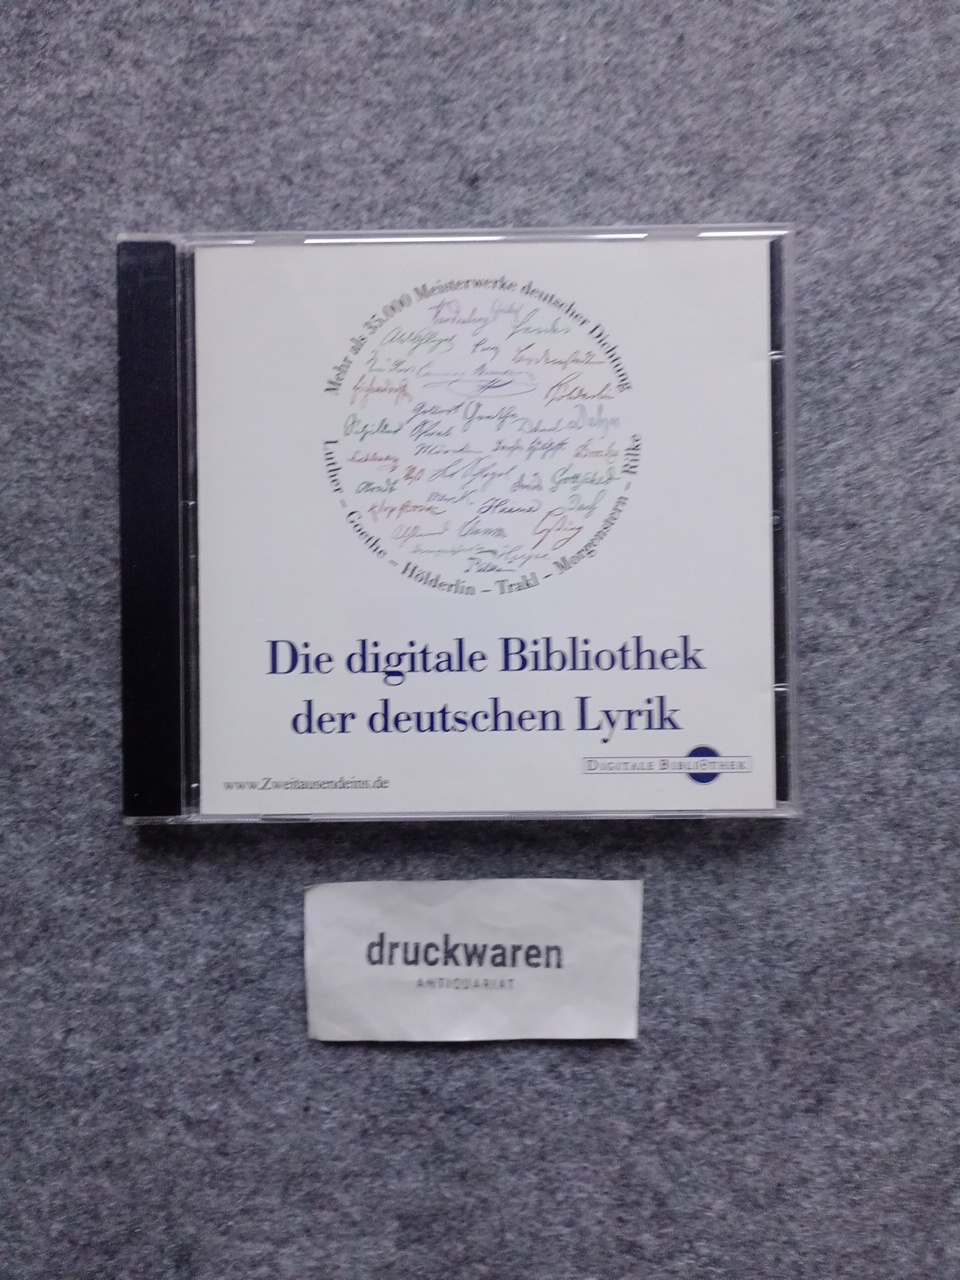 Die digitale Bibliothek der deutschen Lyrik: Über 35.000 Gedichte aus fünf Jahrhunderten [CD-ROM].